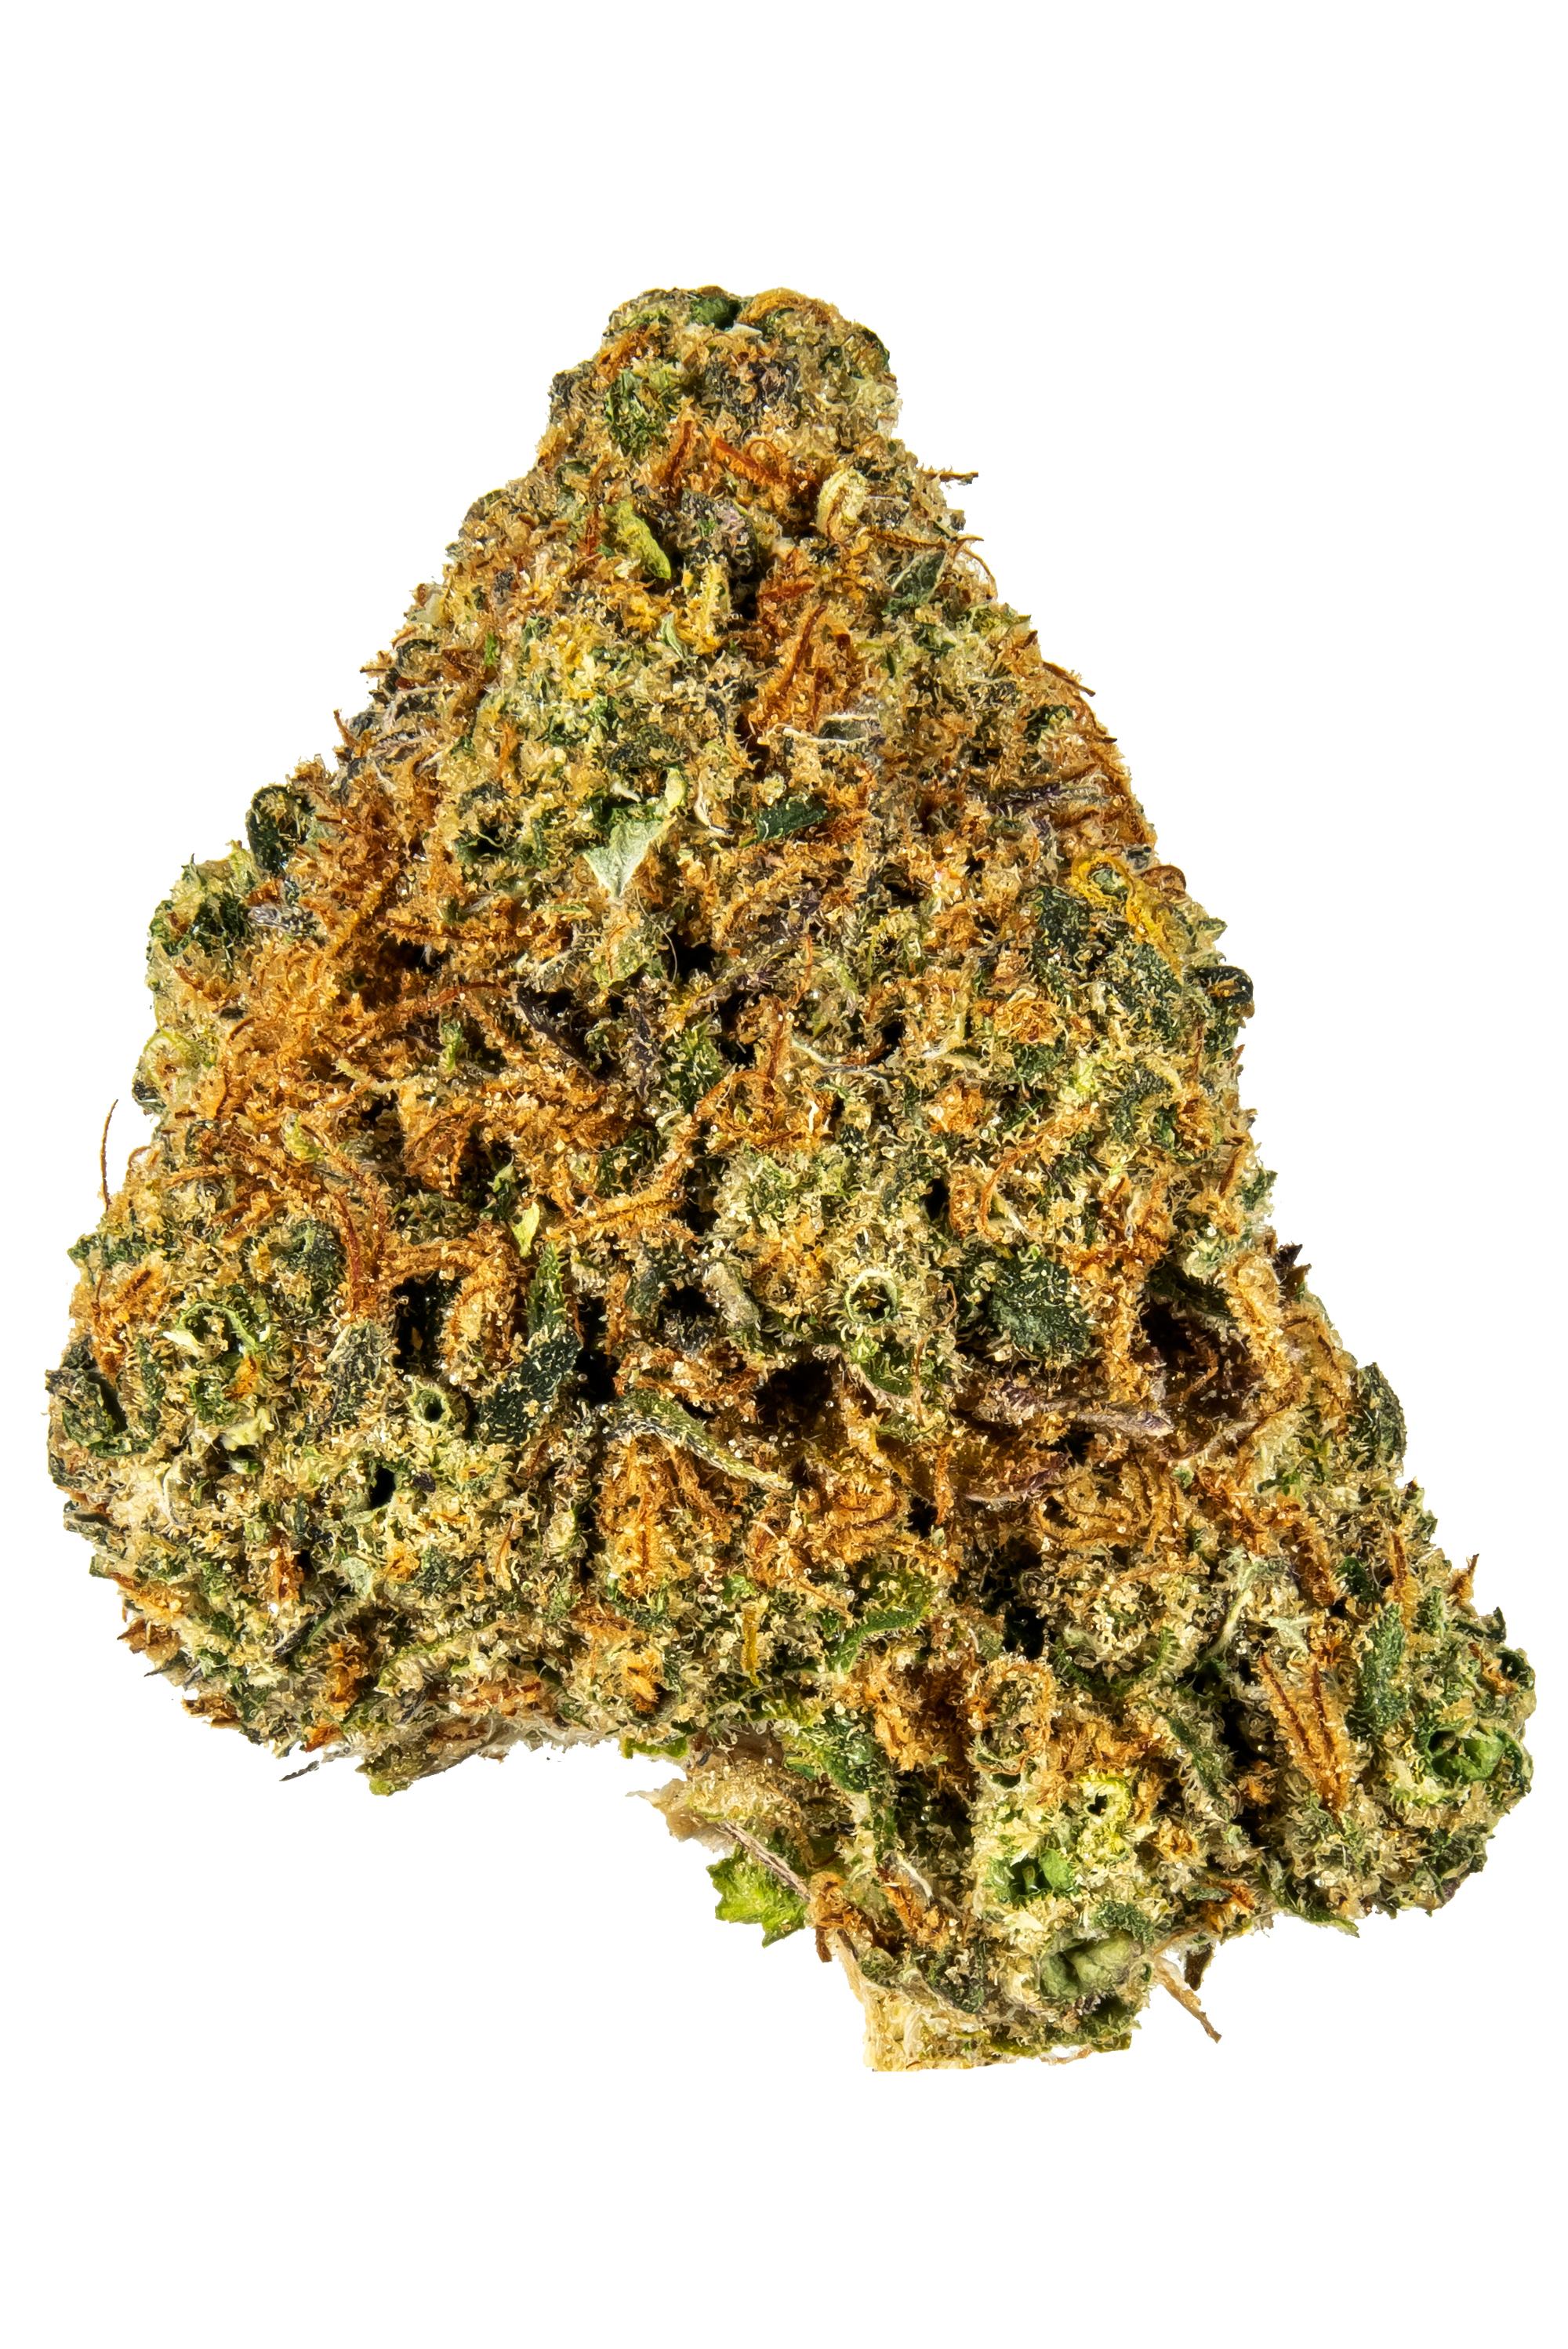 Chunky D - 混合物 Cannabis Strain